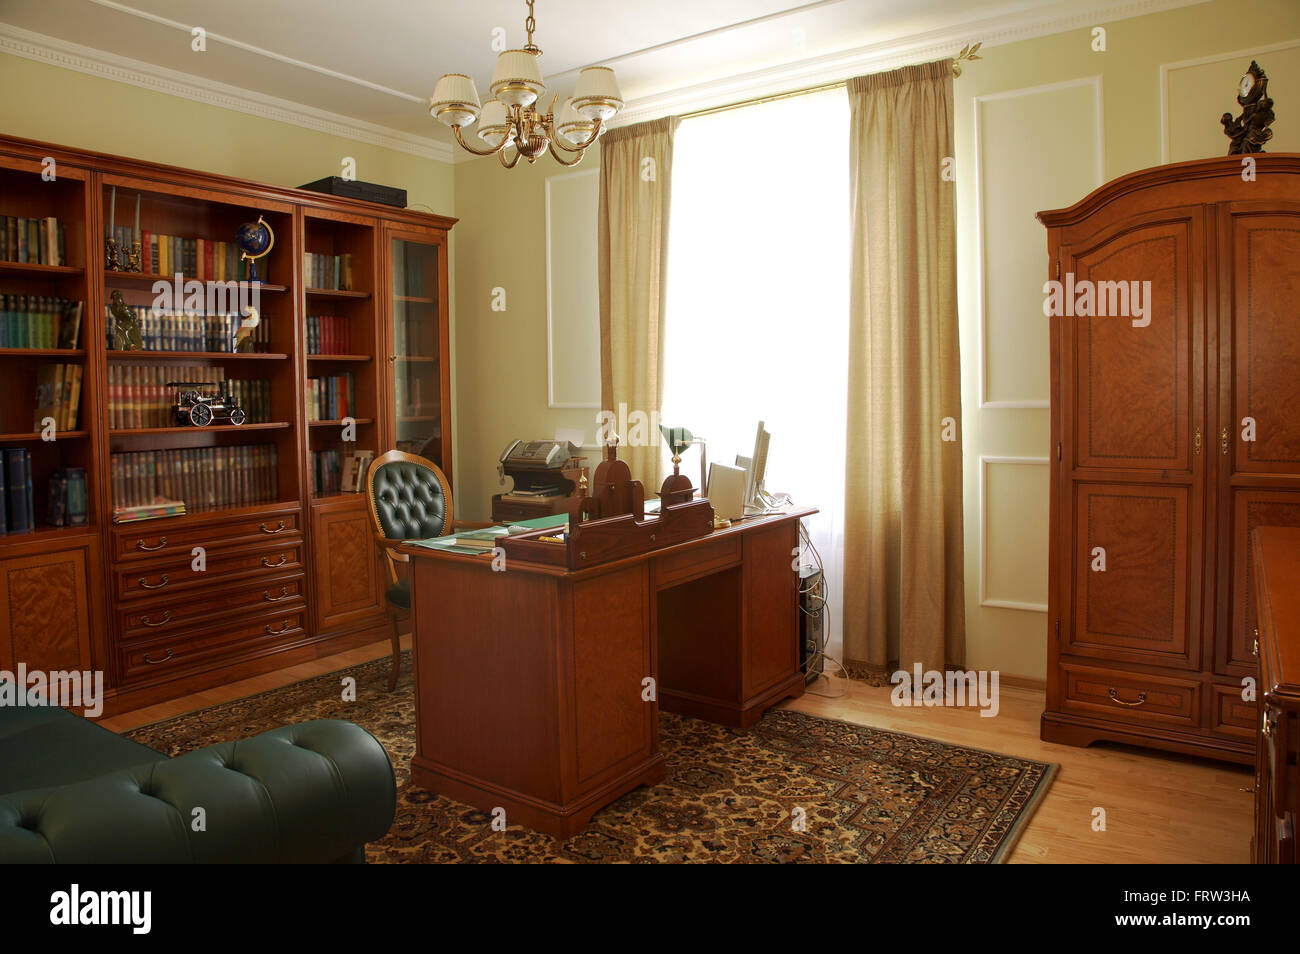 Bibliothèque, table et chaise dans une armoire Banque D'Images